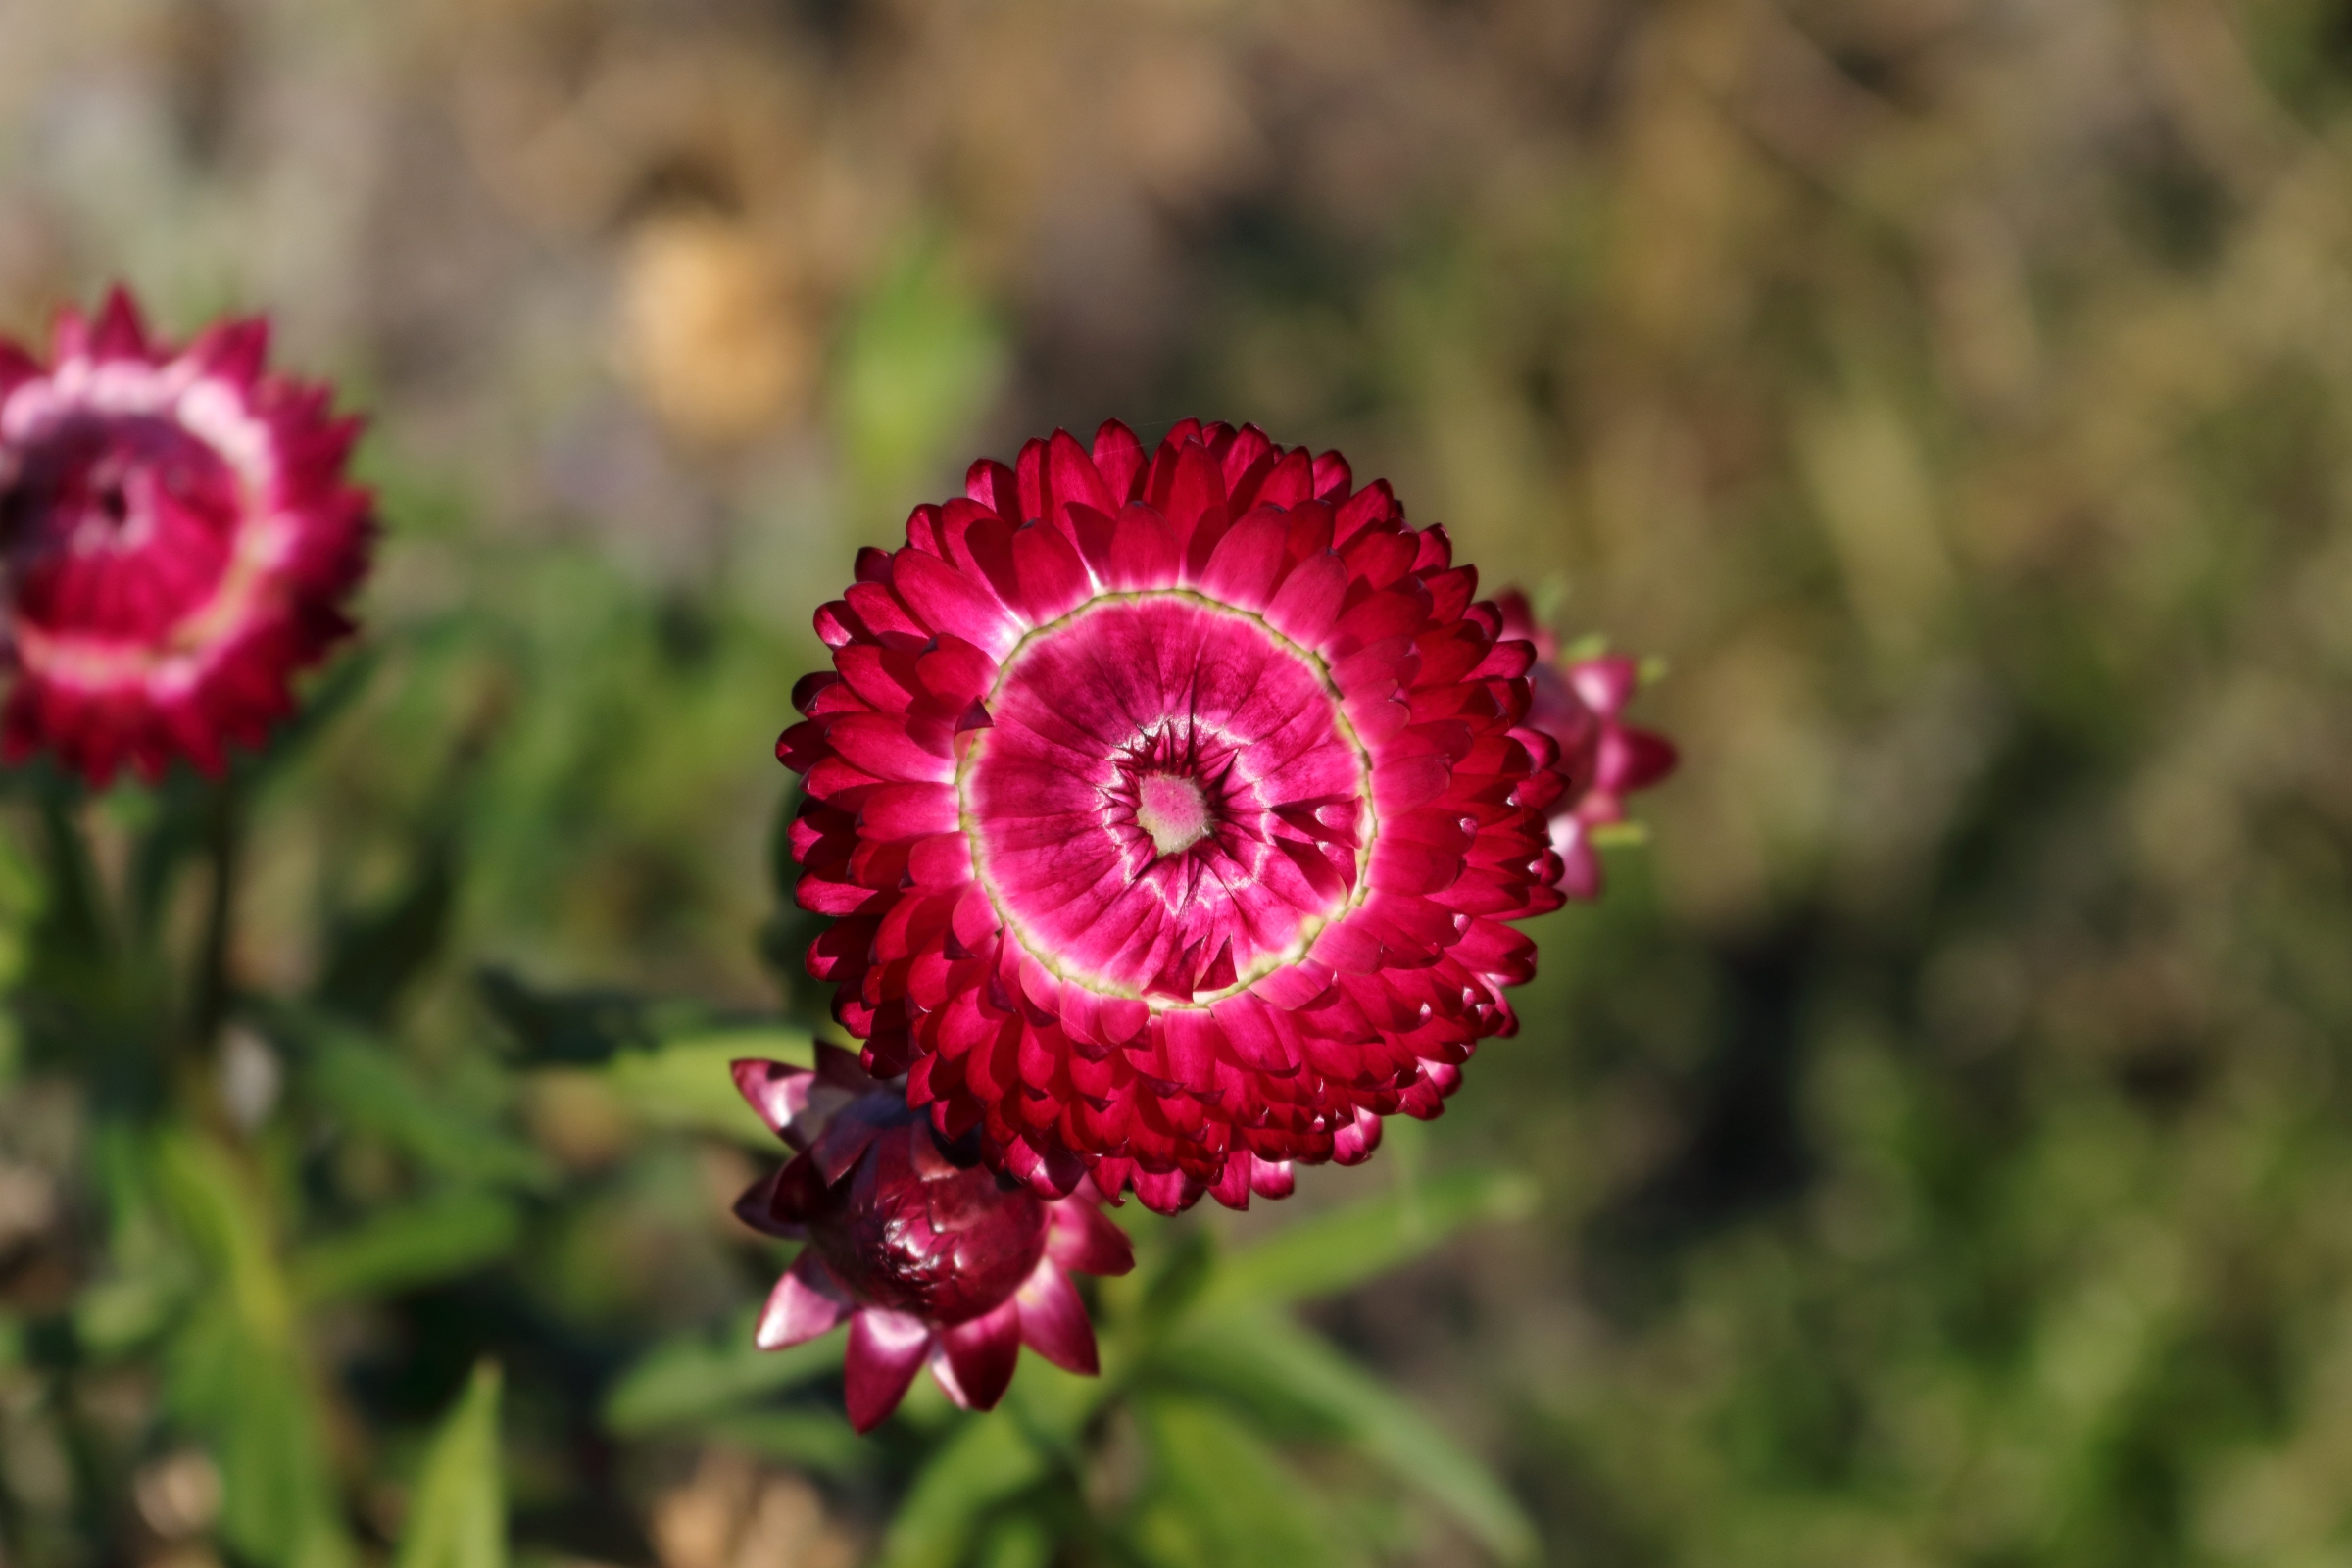 Rote Garten-Strohblume - Die leicht schimmernden roten Blütenblätter in einer Detailaufnahme. Die rundliche Blütenform besteht aus einer Vielzahl von einzelnen Blütenblättern. In der Mitte der Blüte ist ein weißer Ring.